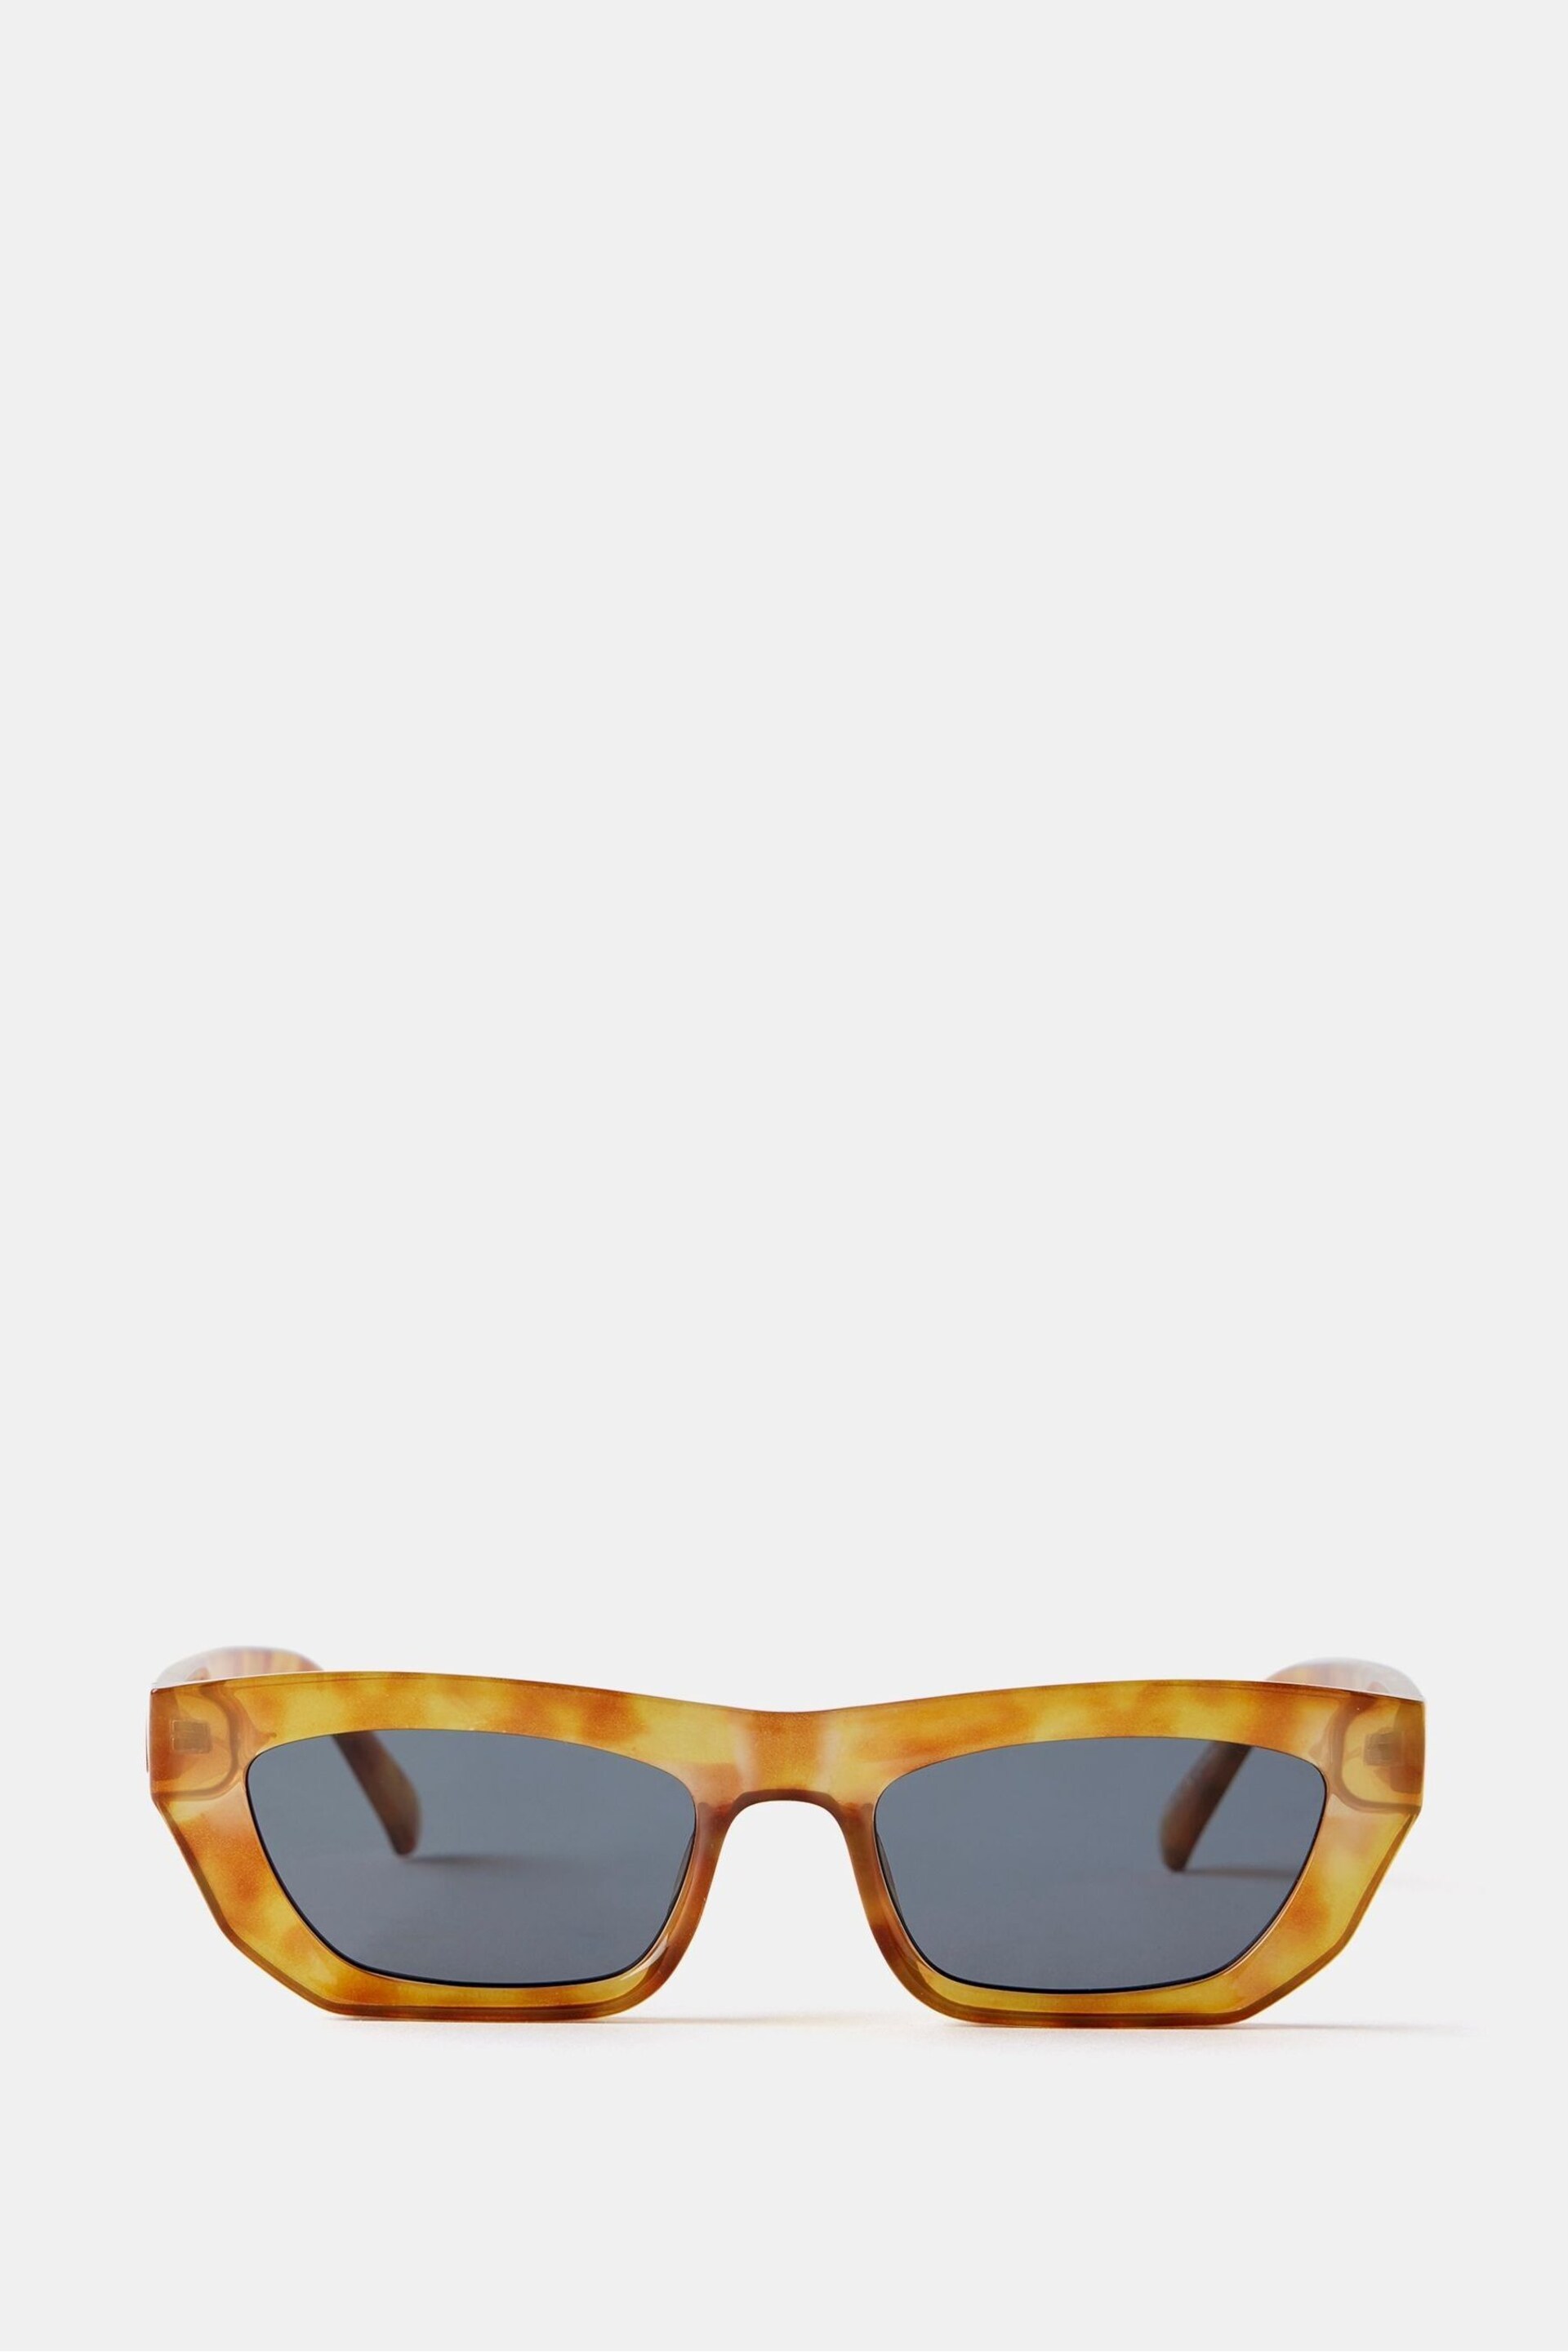 Mint Velvet Yellow Rectangular Sunglasses - Image 1 of 2